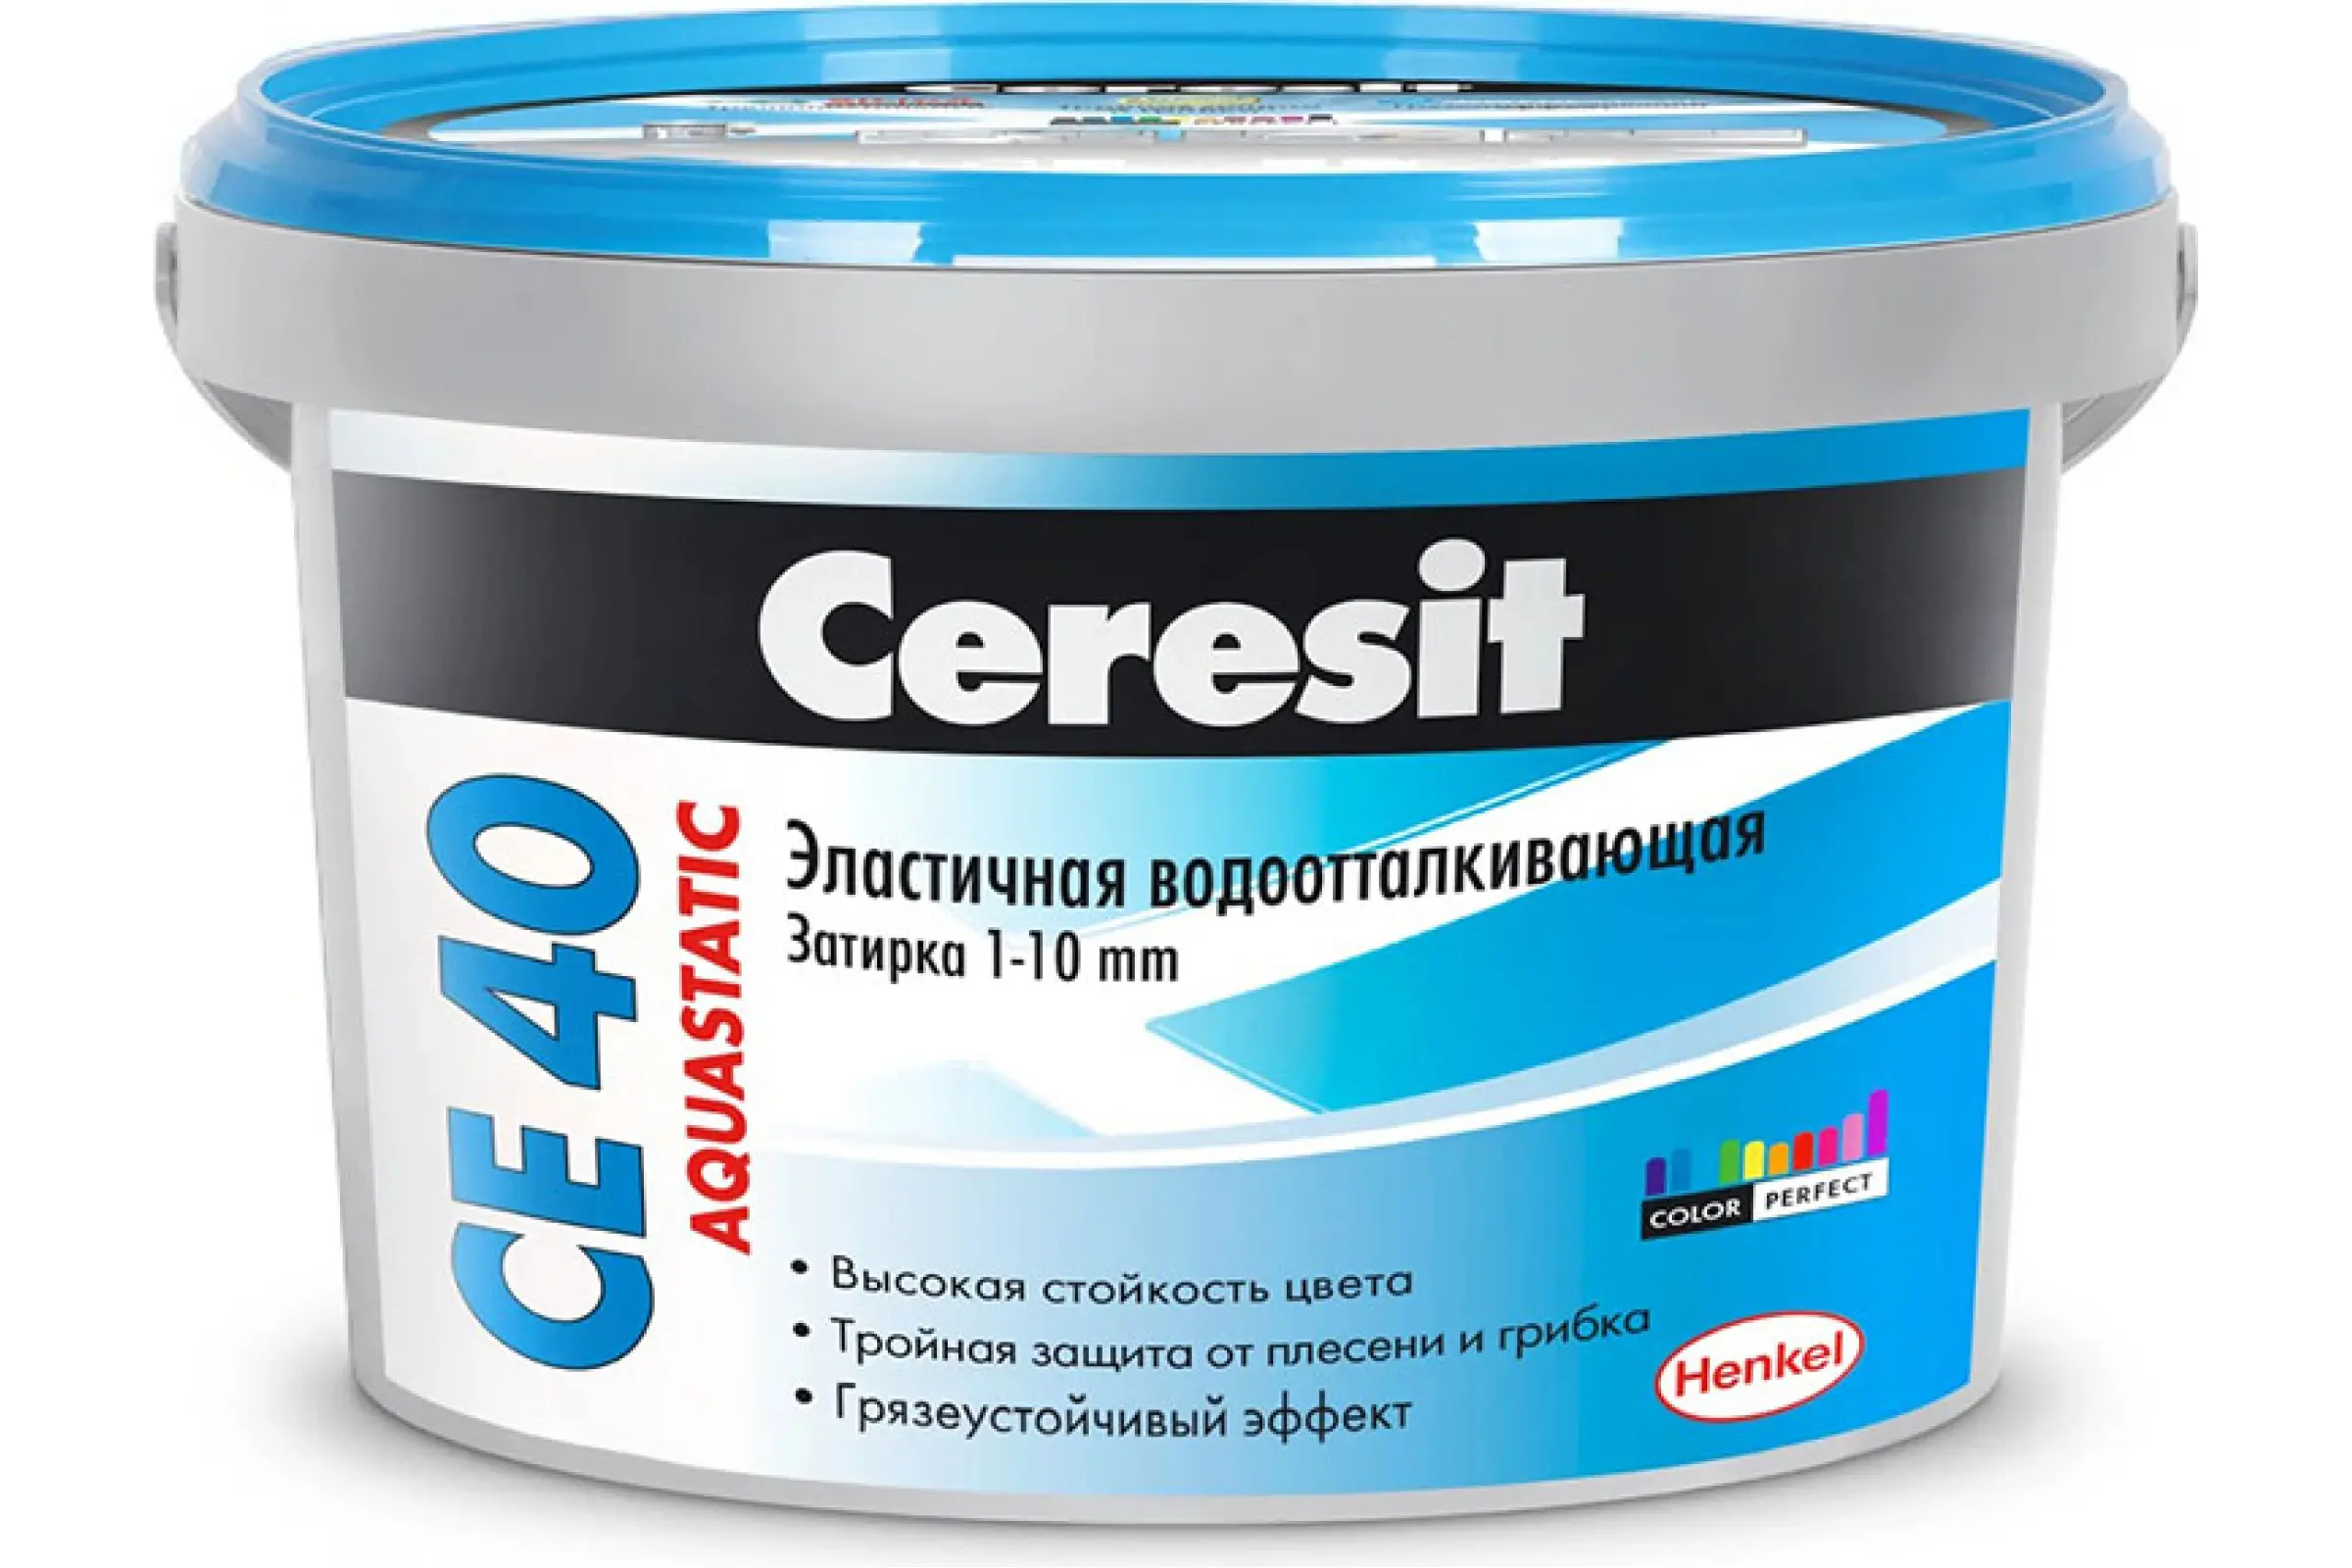 Затирка Ceresit CE 40 №43 aquastatic багама 1 кг